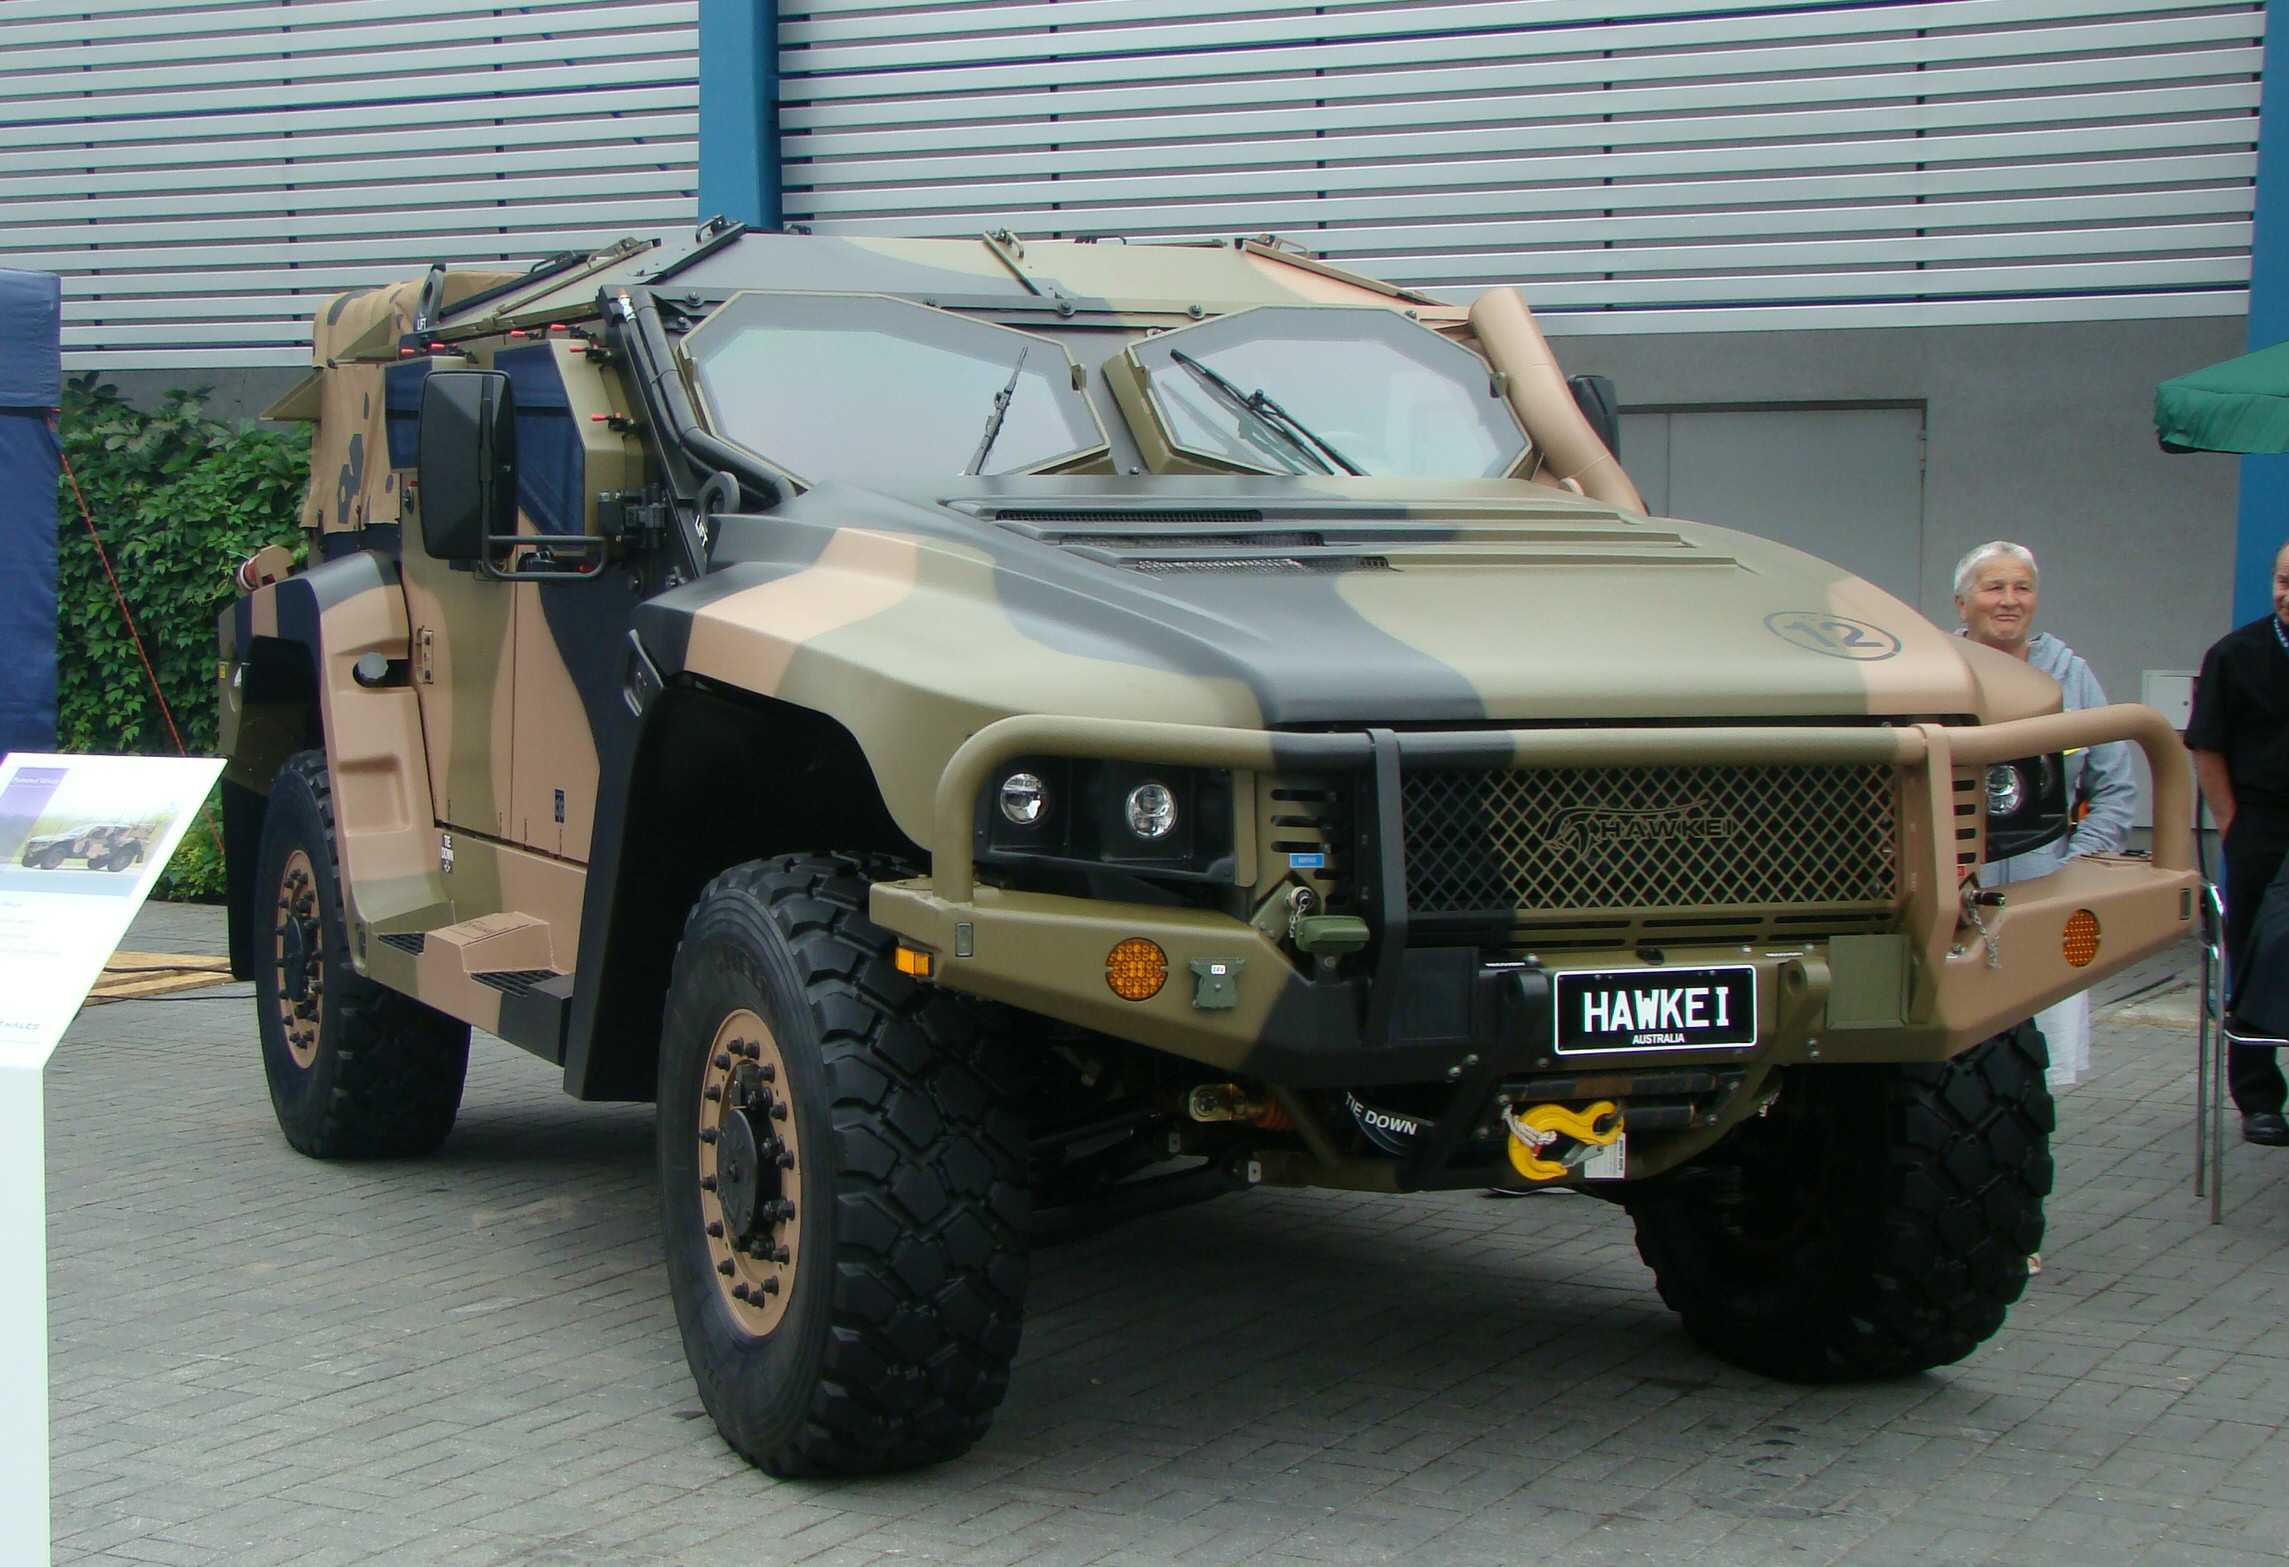 Hawkey PMV-L مركبة تنقل أسترالية محمية..مميزات وقدرات